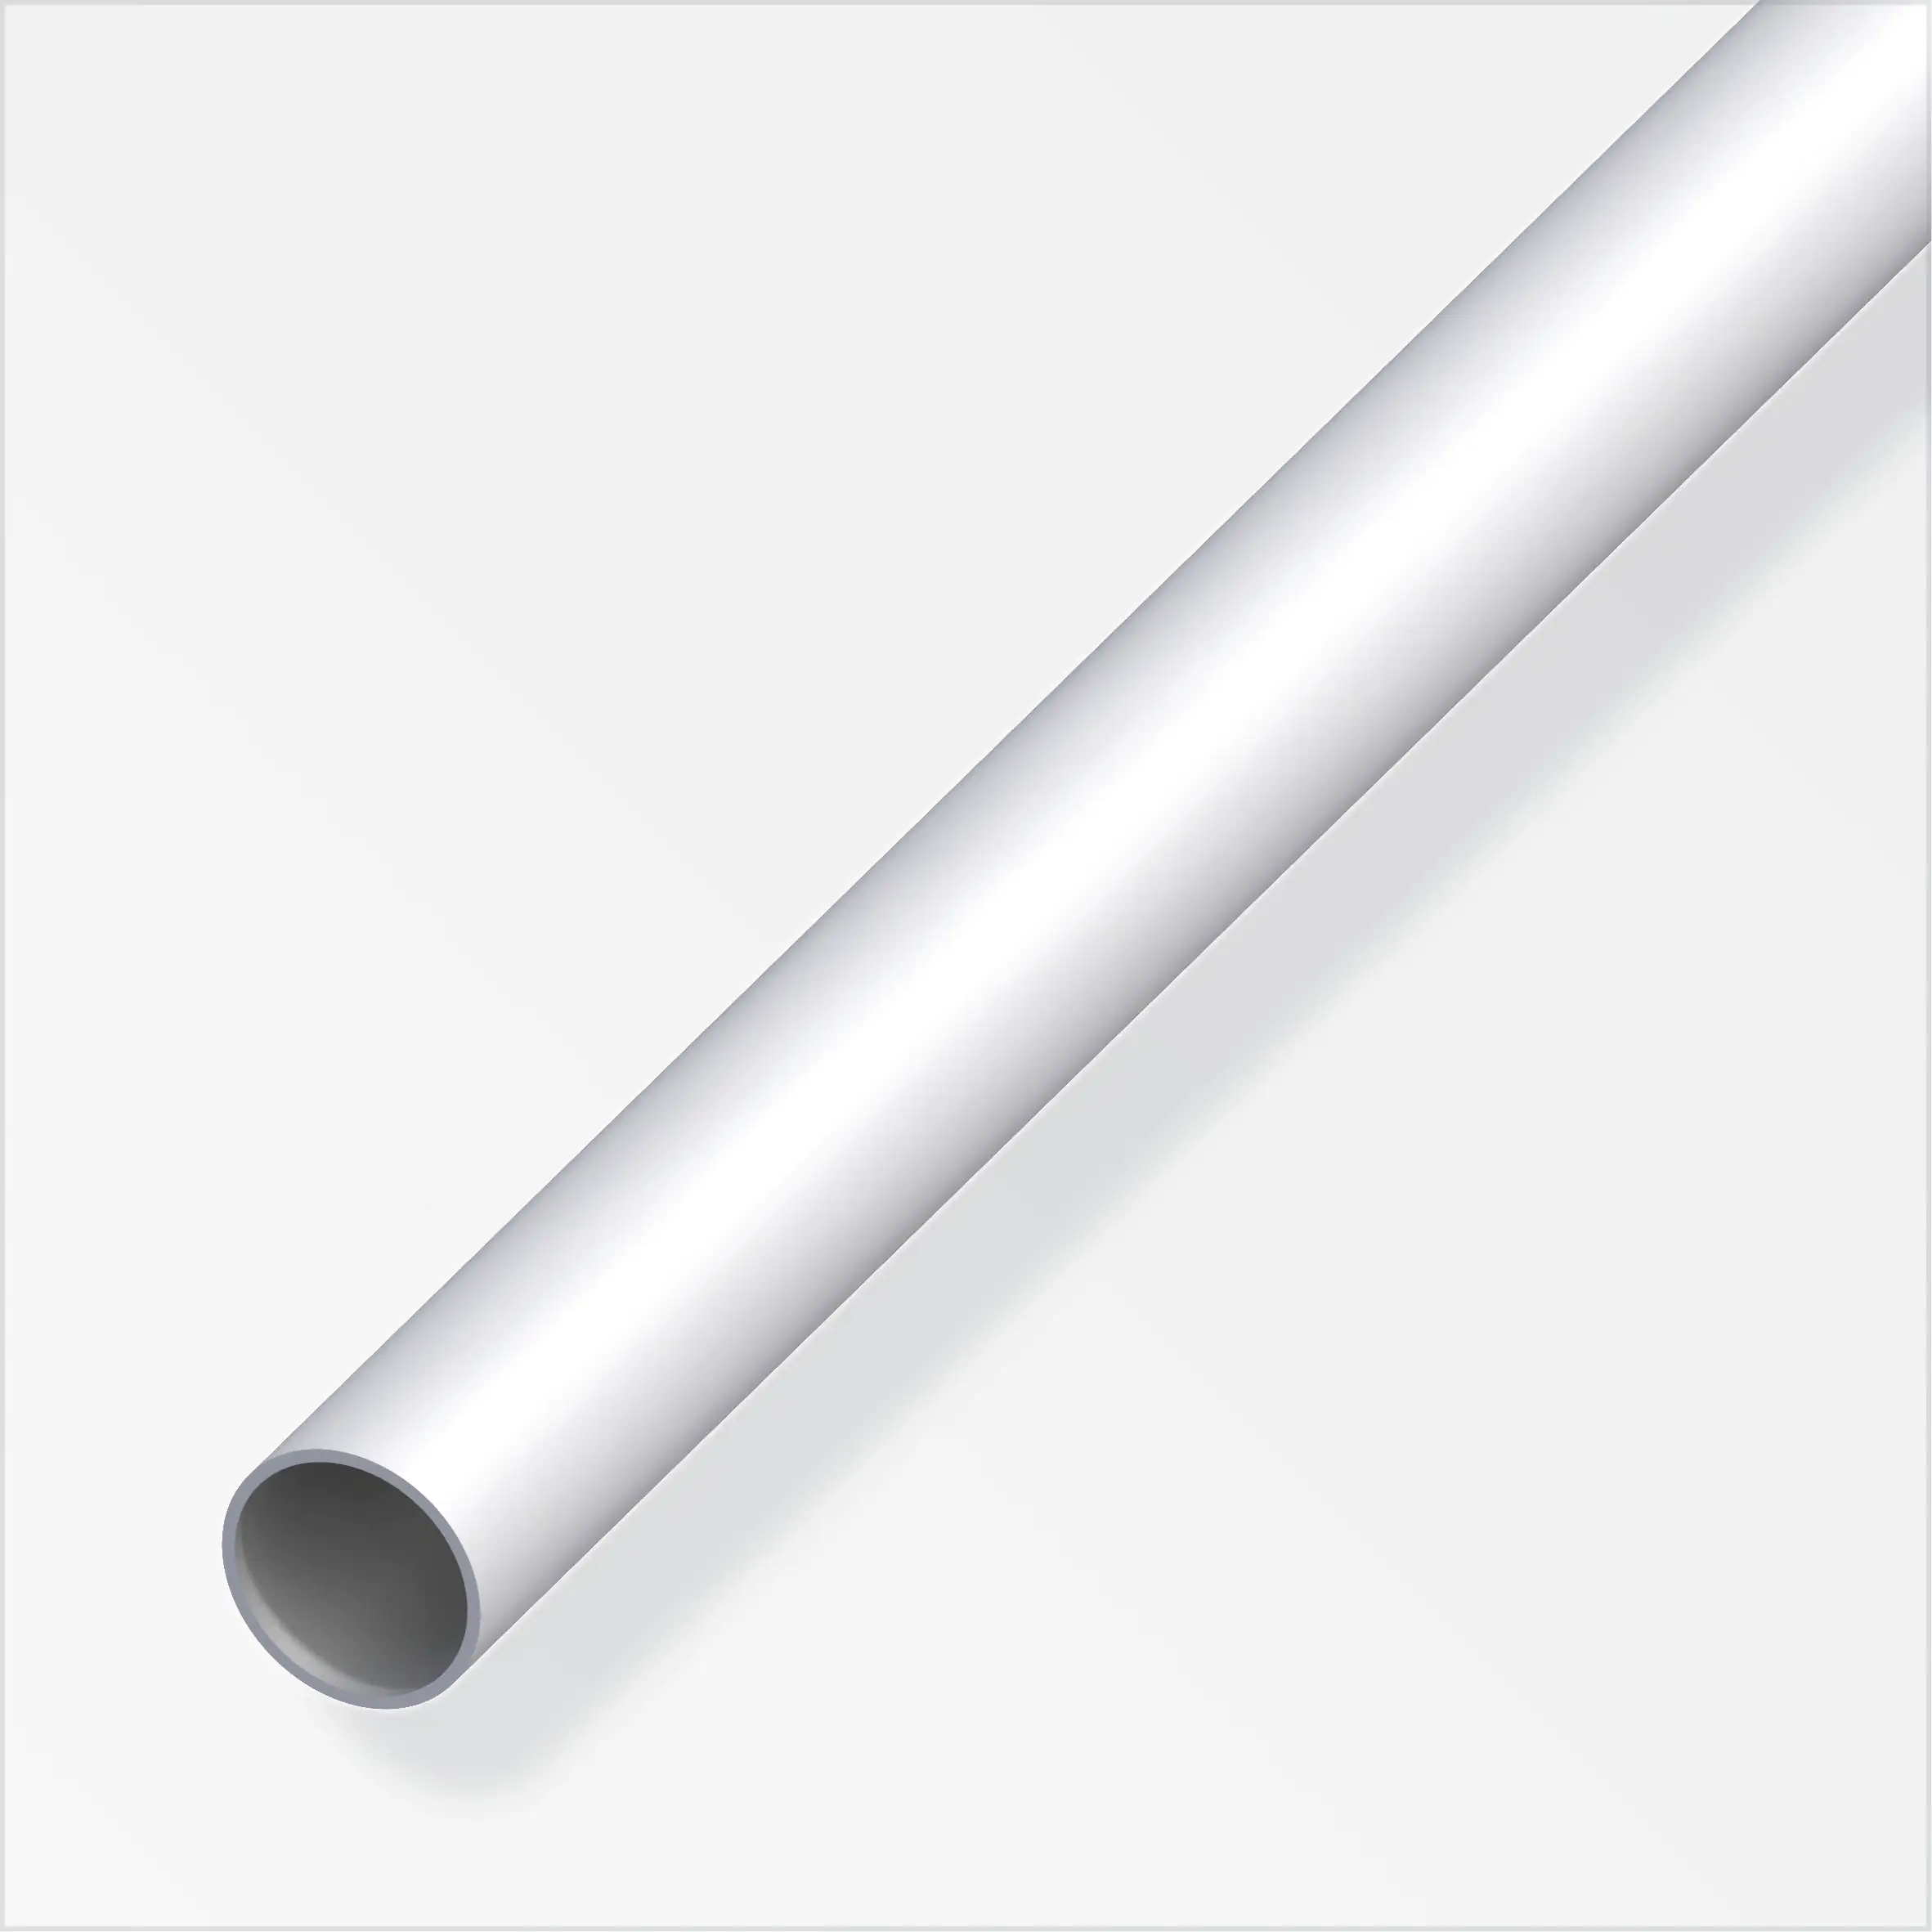 Rundrohr Aluminium Silber Eloxiert 2 cm x 0,2 cm x 200 cm kaufen bei OBI